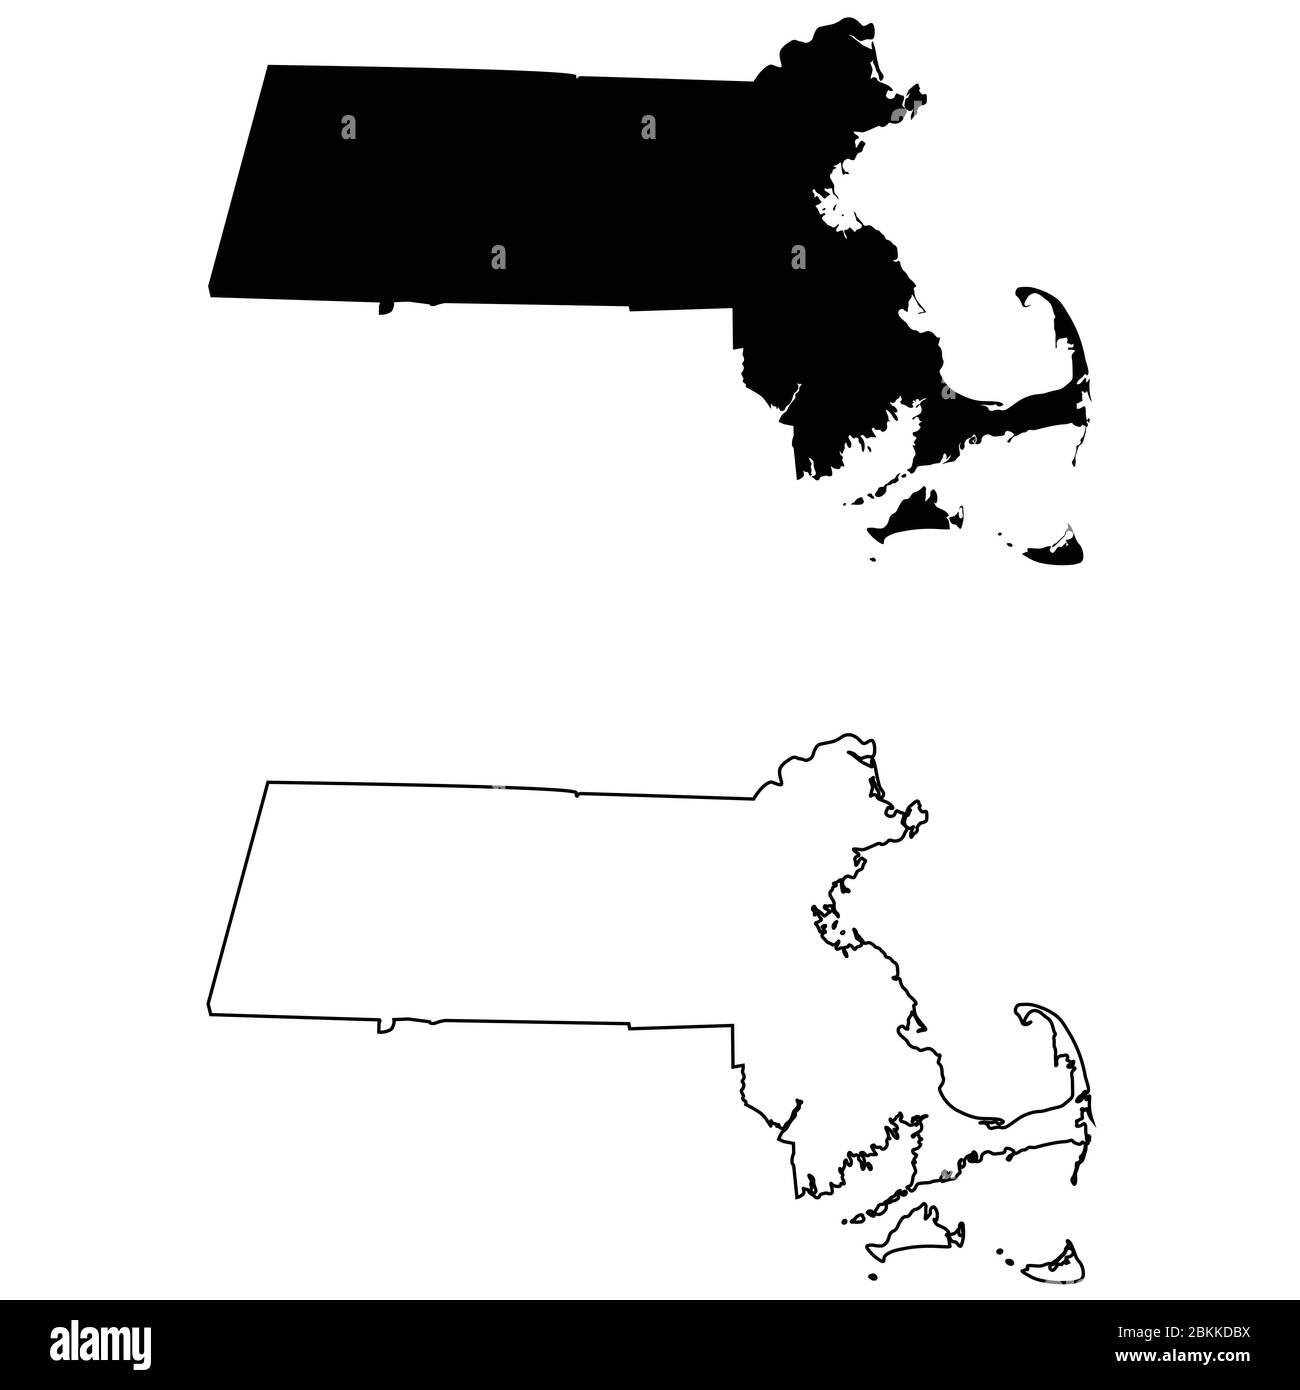 Cartes d'état ma du Massachusetts. Silhouette et contour noirs isolés sur un fond blanc. Vecteur EPS Illustration de Vecteur